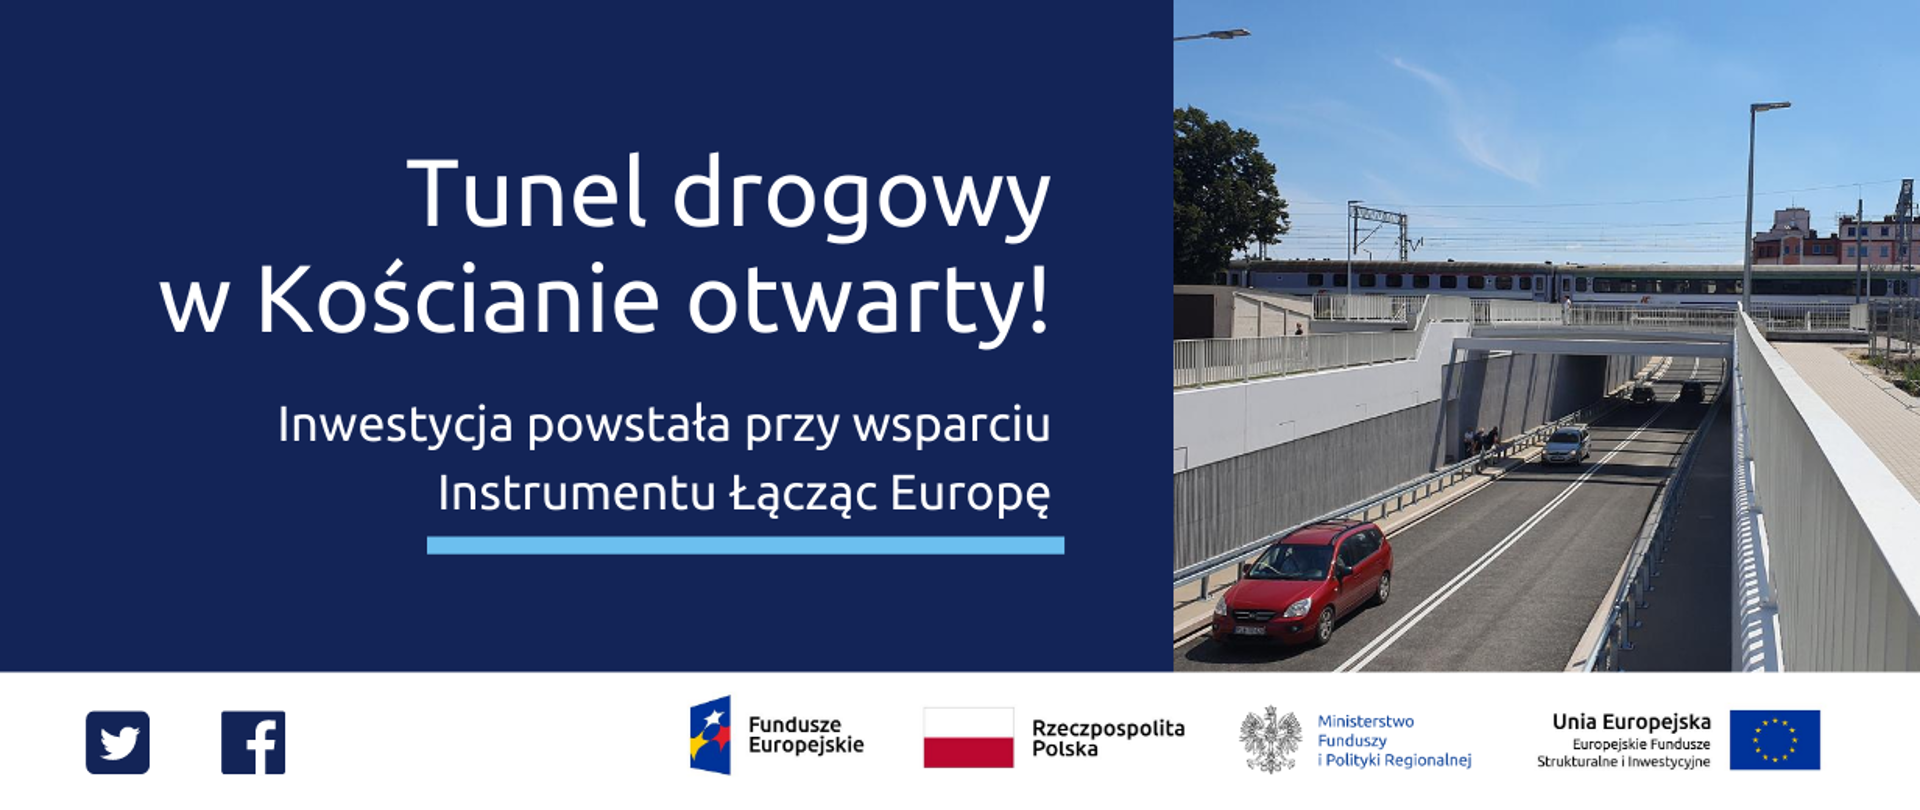 Grafika ze zdjęciem nowego tunelu drogowego oraz napis "Tunel drogowy w Kościanie otwarty! Inwestycja powstała przy wsparciu Instrumentu Łącząc Europę"